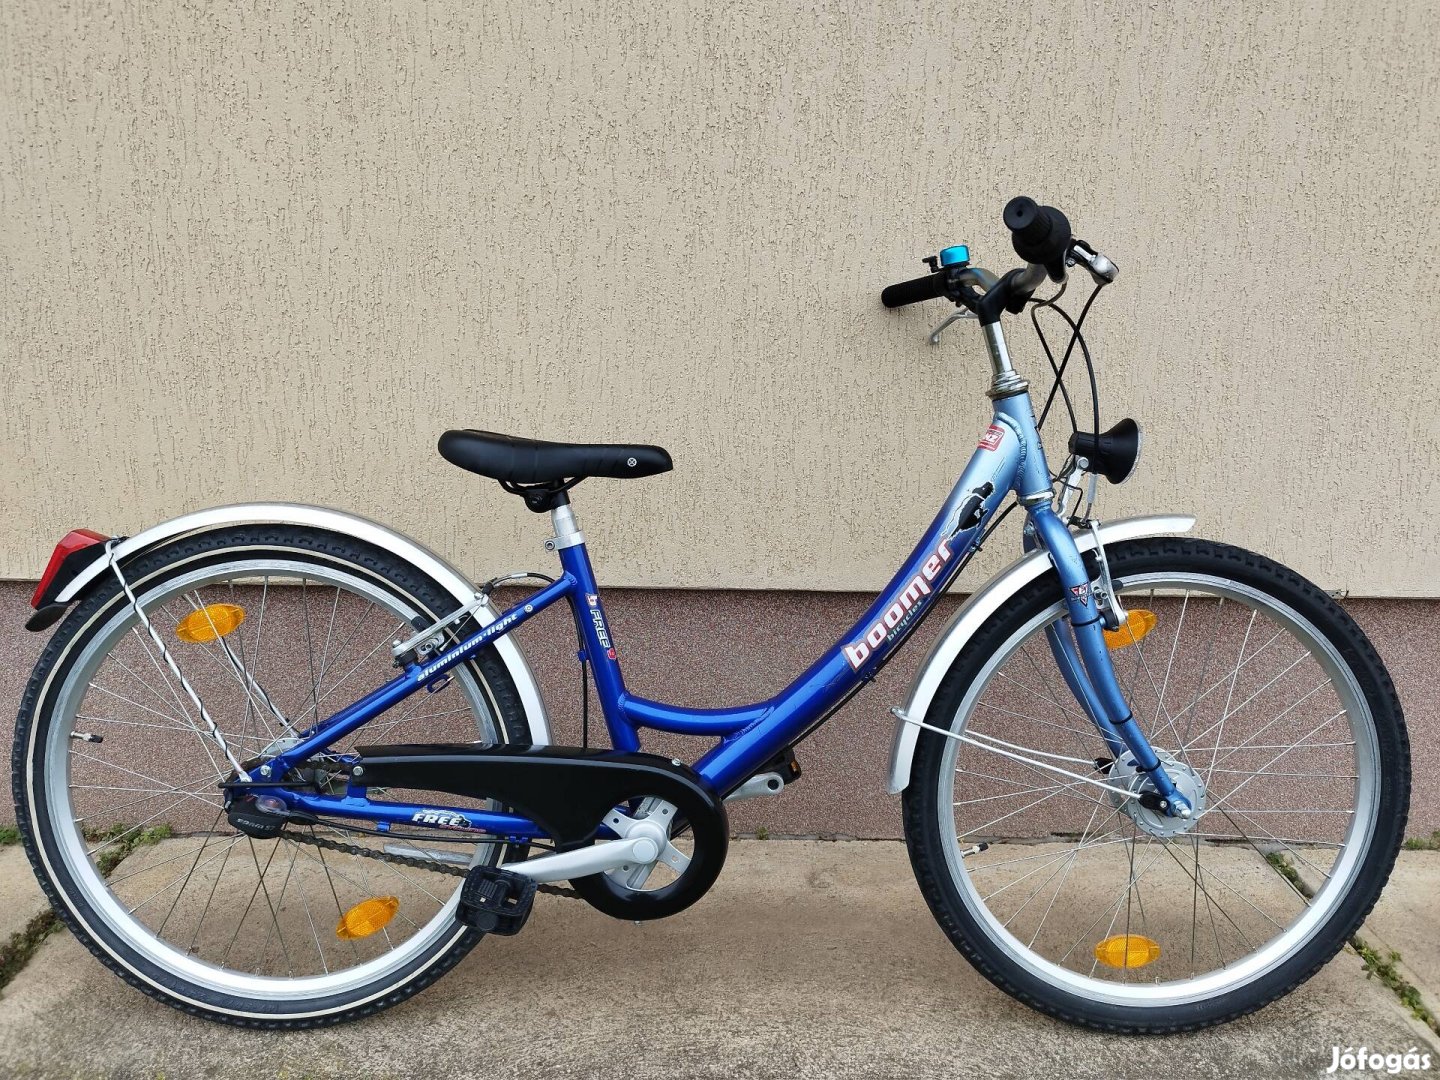 Boomer 24" agydinamós, agyváltós, alu gyerek kerékpár eladó.